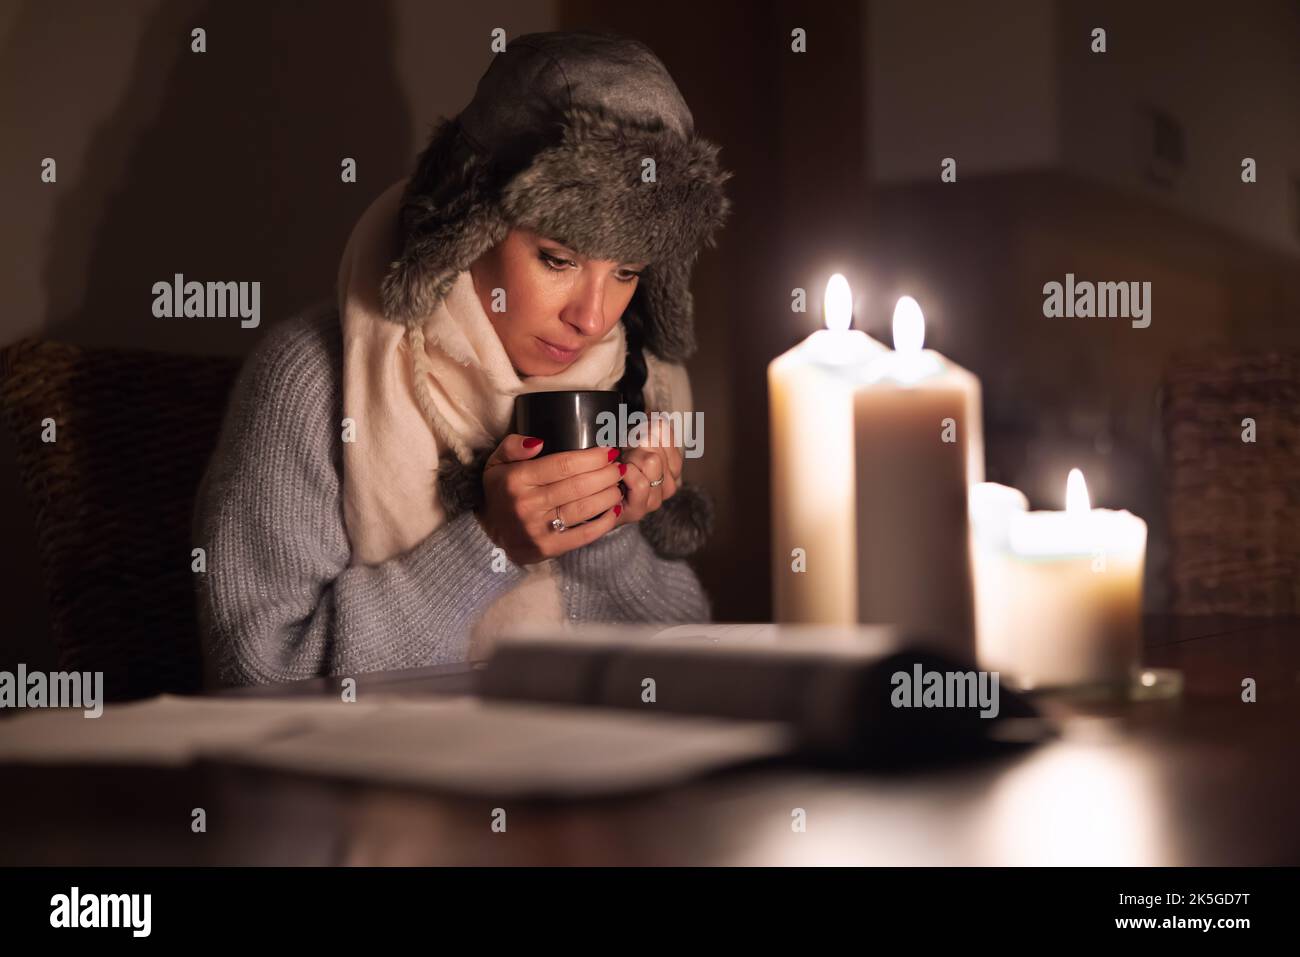 Eine eiskalte junge Frau in Winterkleidung wärmt ihre Hände auf einer Tasse Tee und leuchtet mit Kerzen, während Stromausfälle durch Stromausfälle verursacht werden. Stockfoto